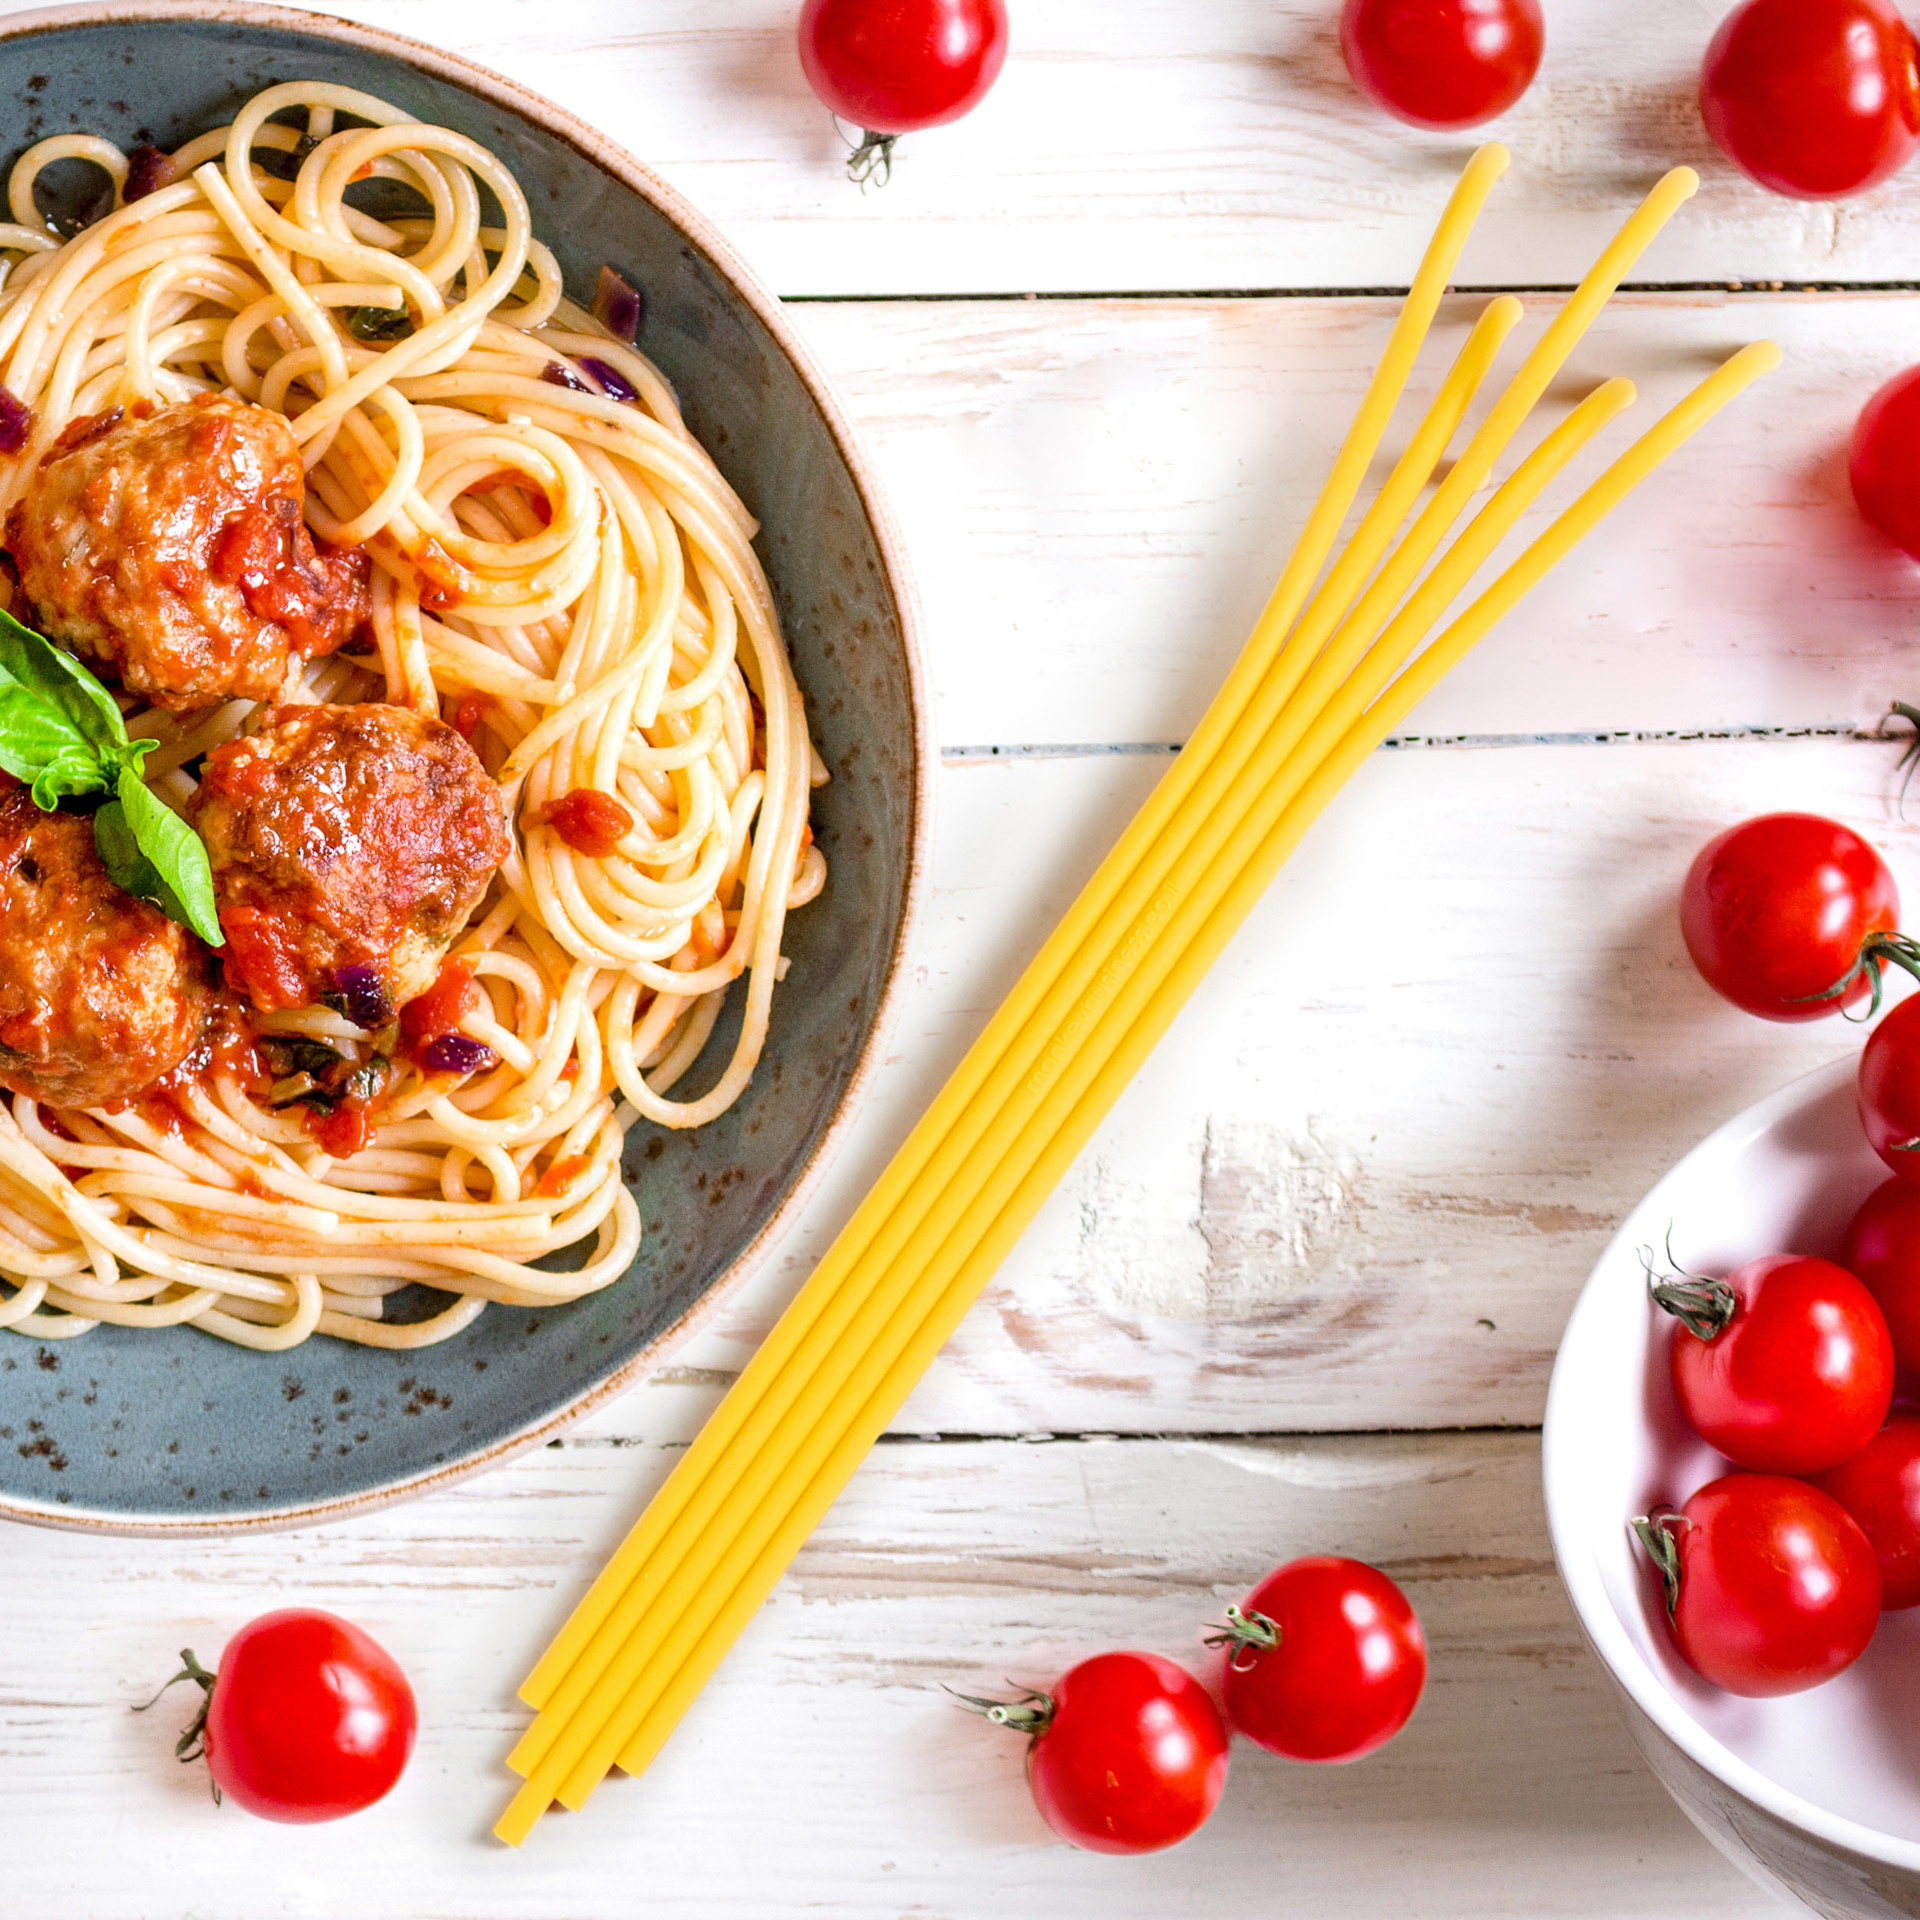 Servi pasta a forma di spaghetti, , large